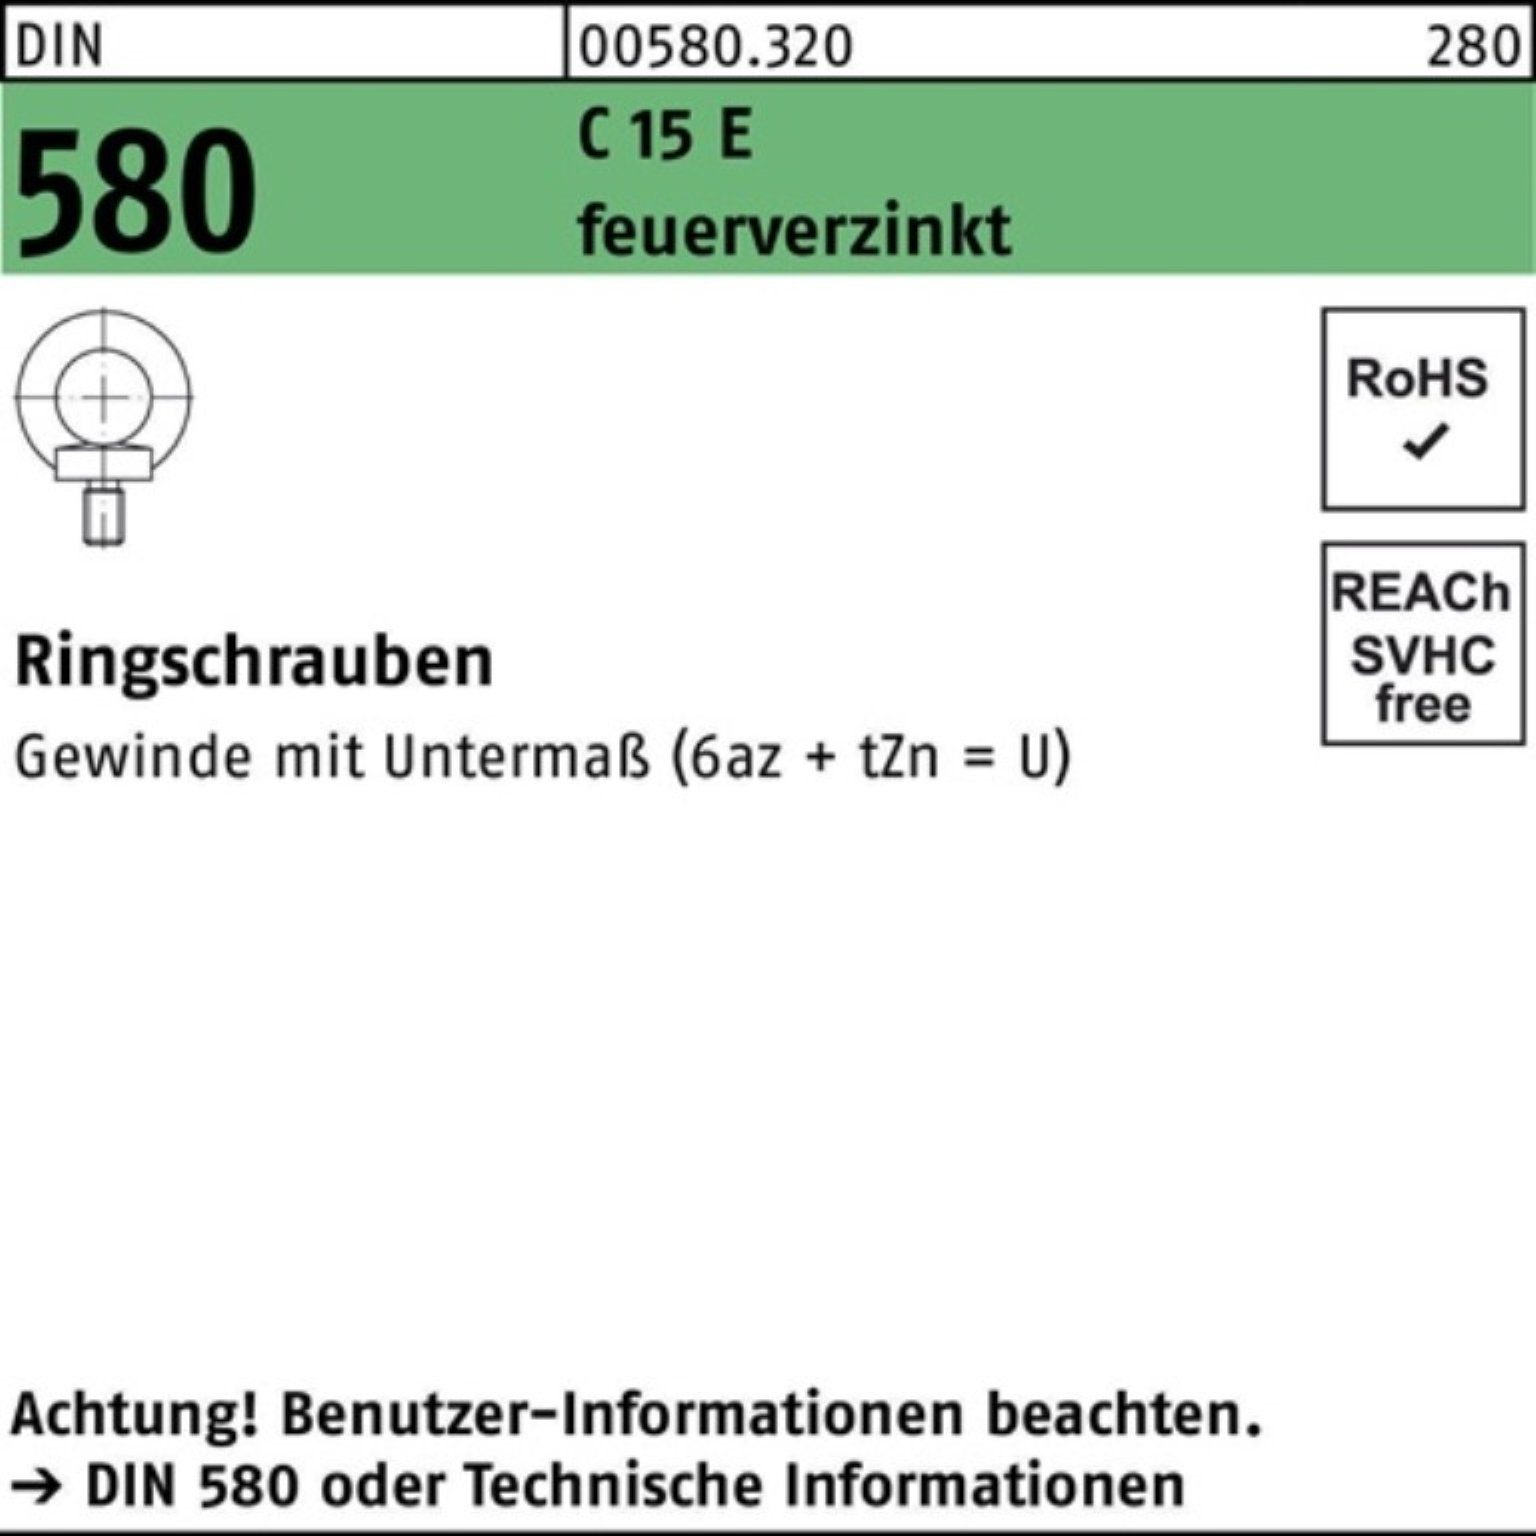 Reyher Schraube 100er 15 M24 DIN 580 Ringschraube 1 C Pack 580 DIN Stück feuerverz. E